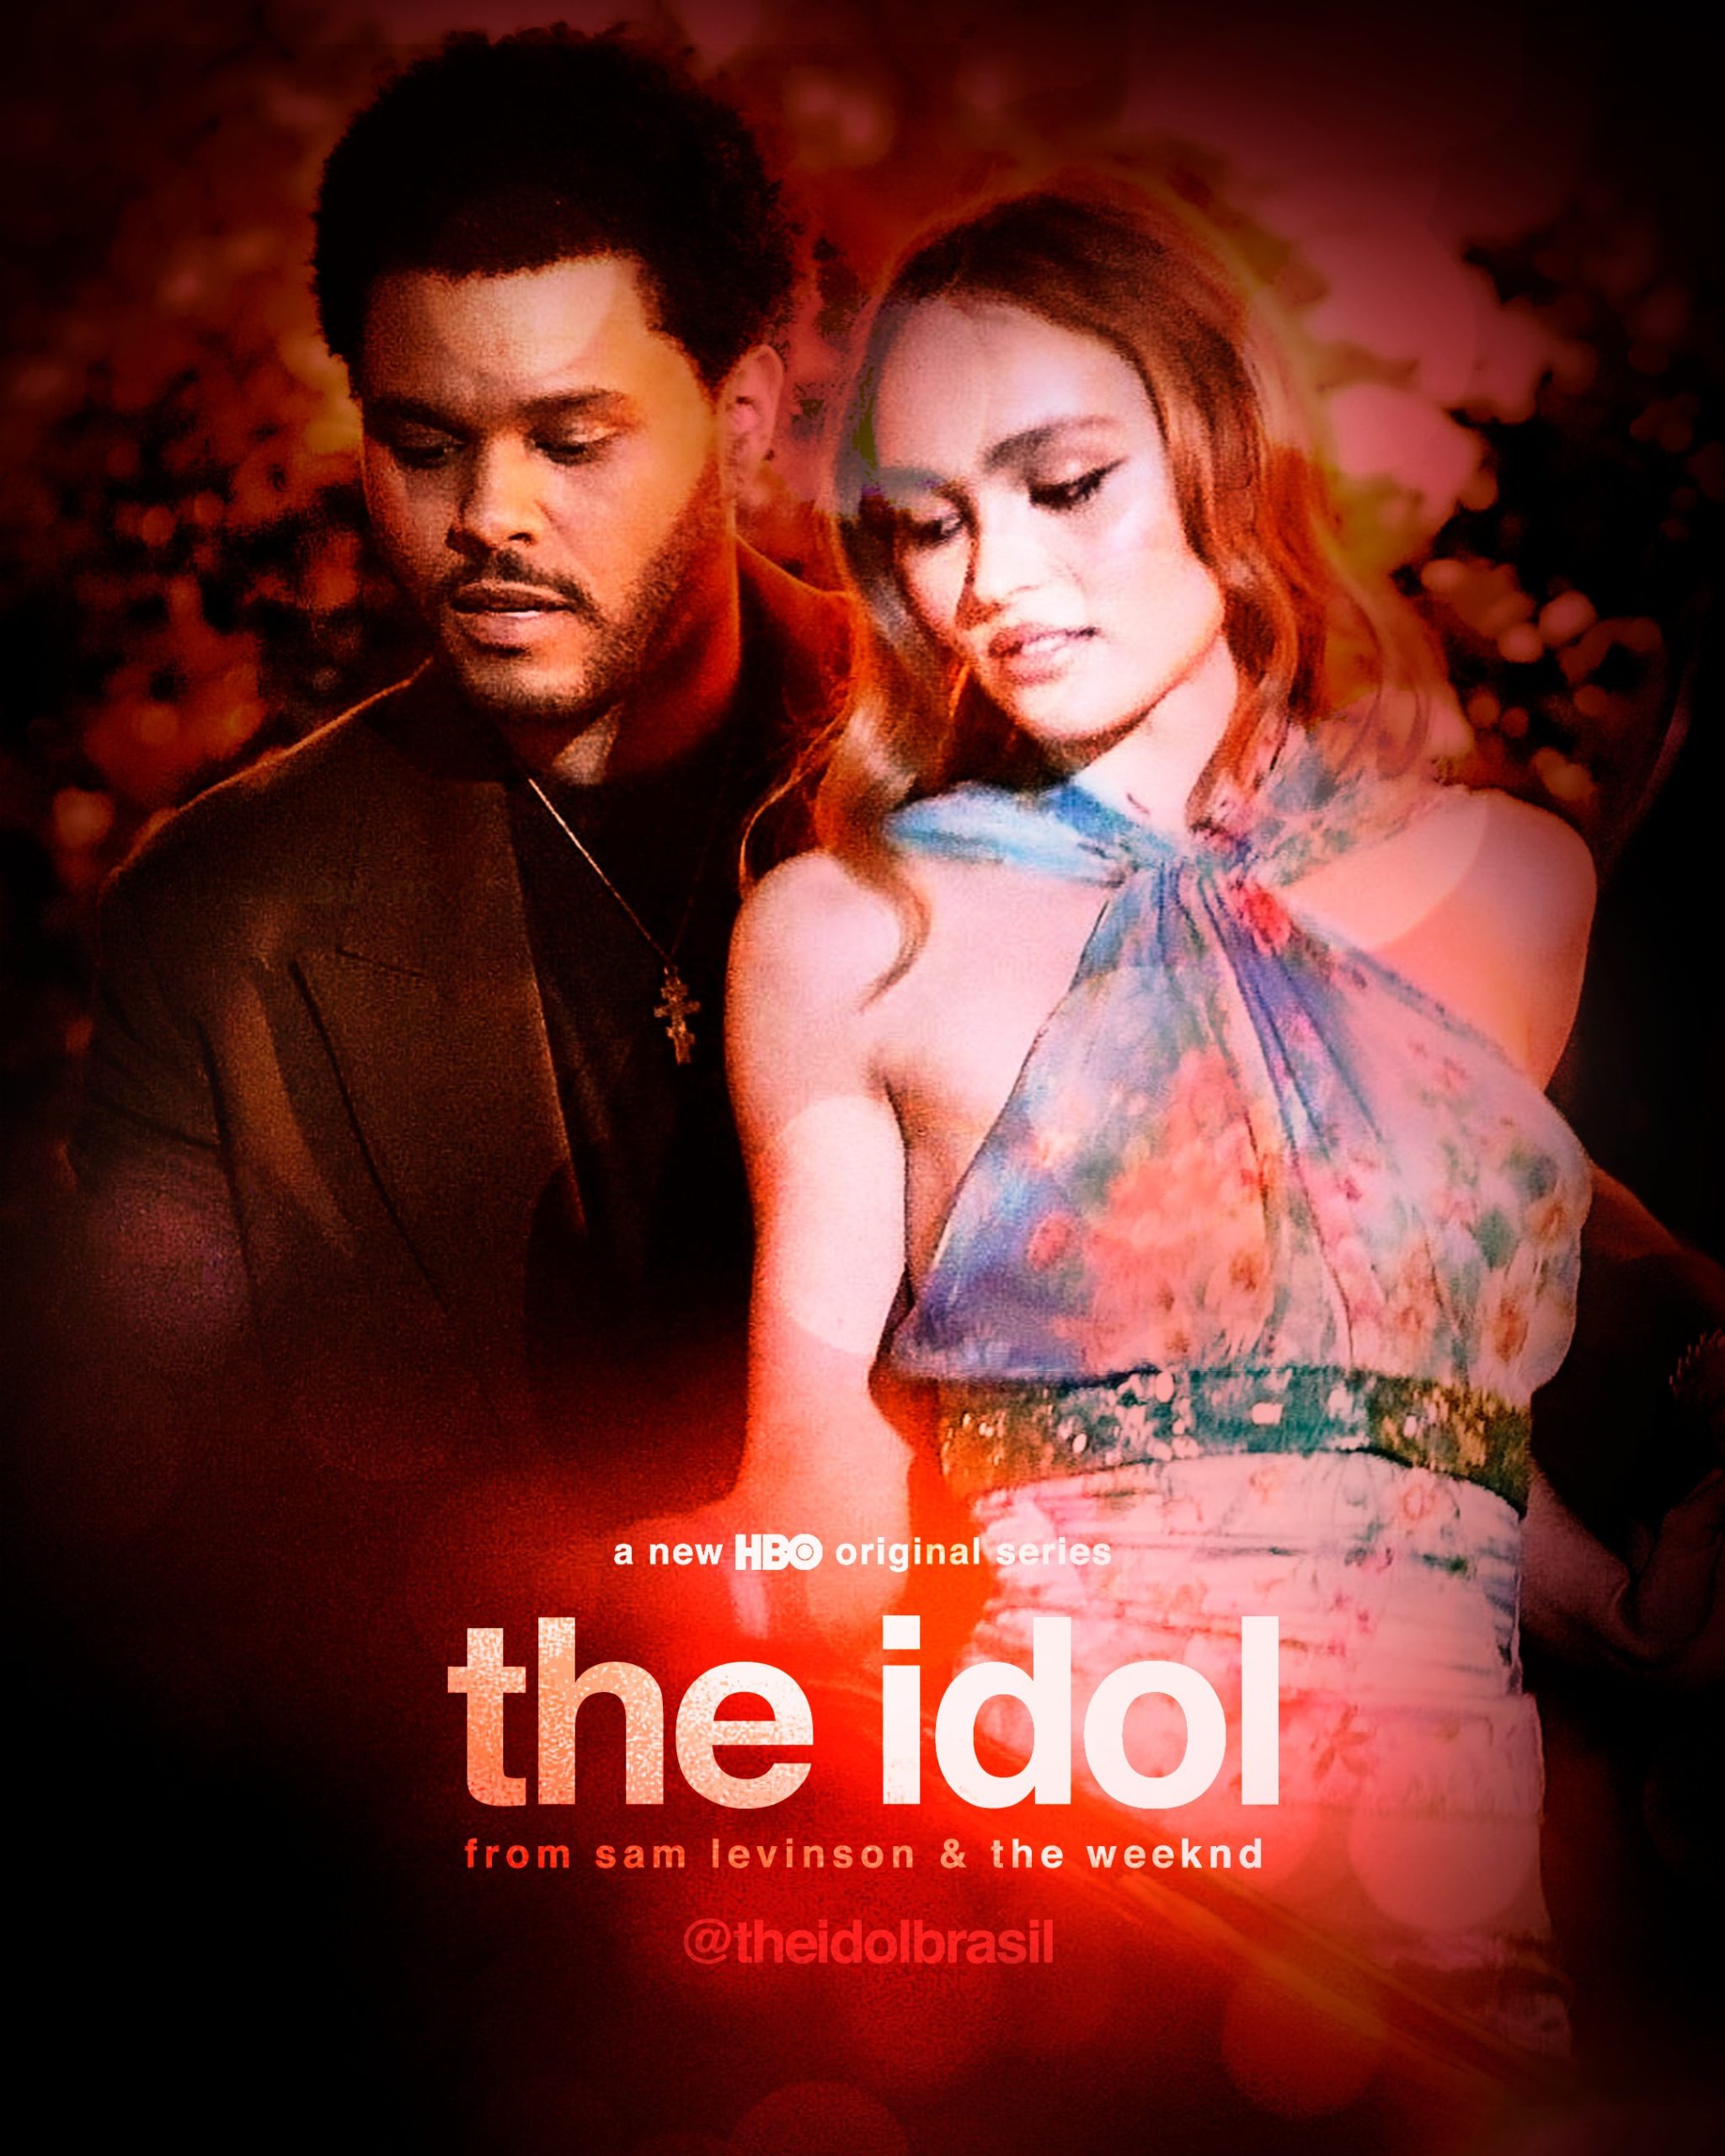 Divulgado o trailer de "The Idol" Rádio Oxigénio